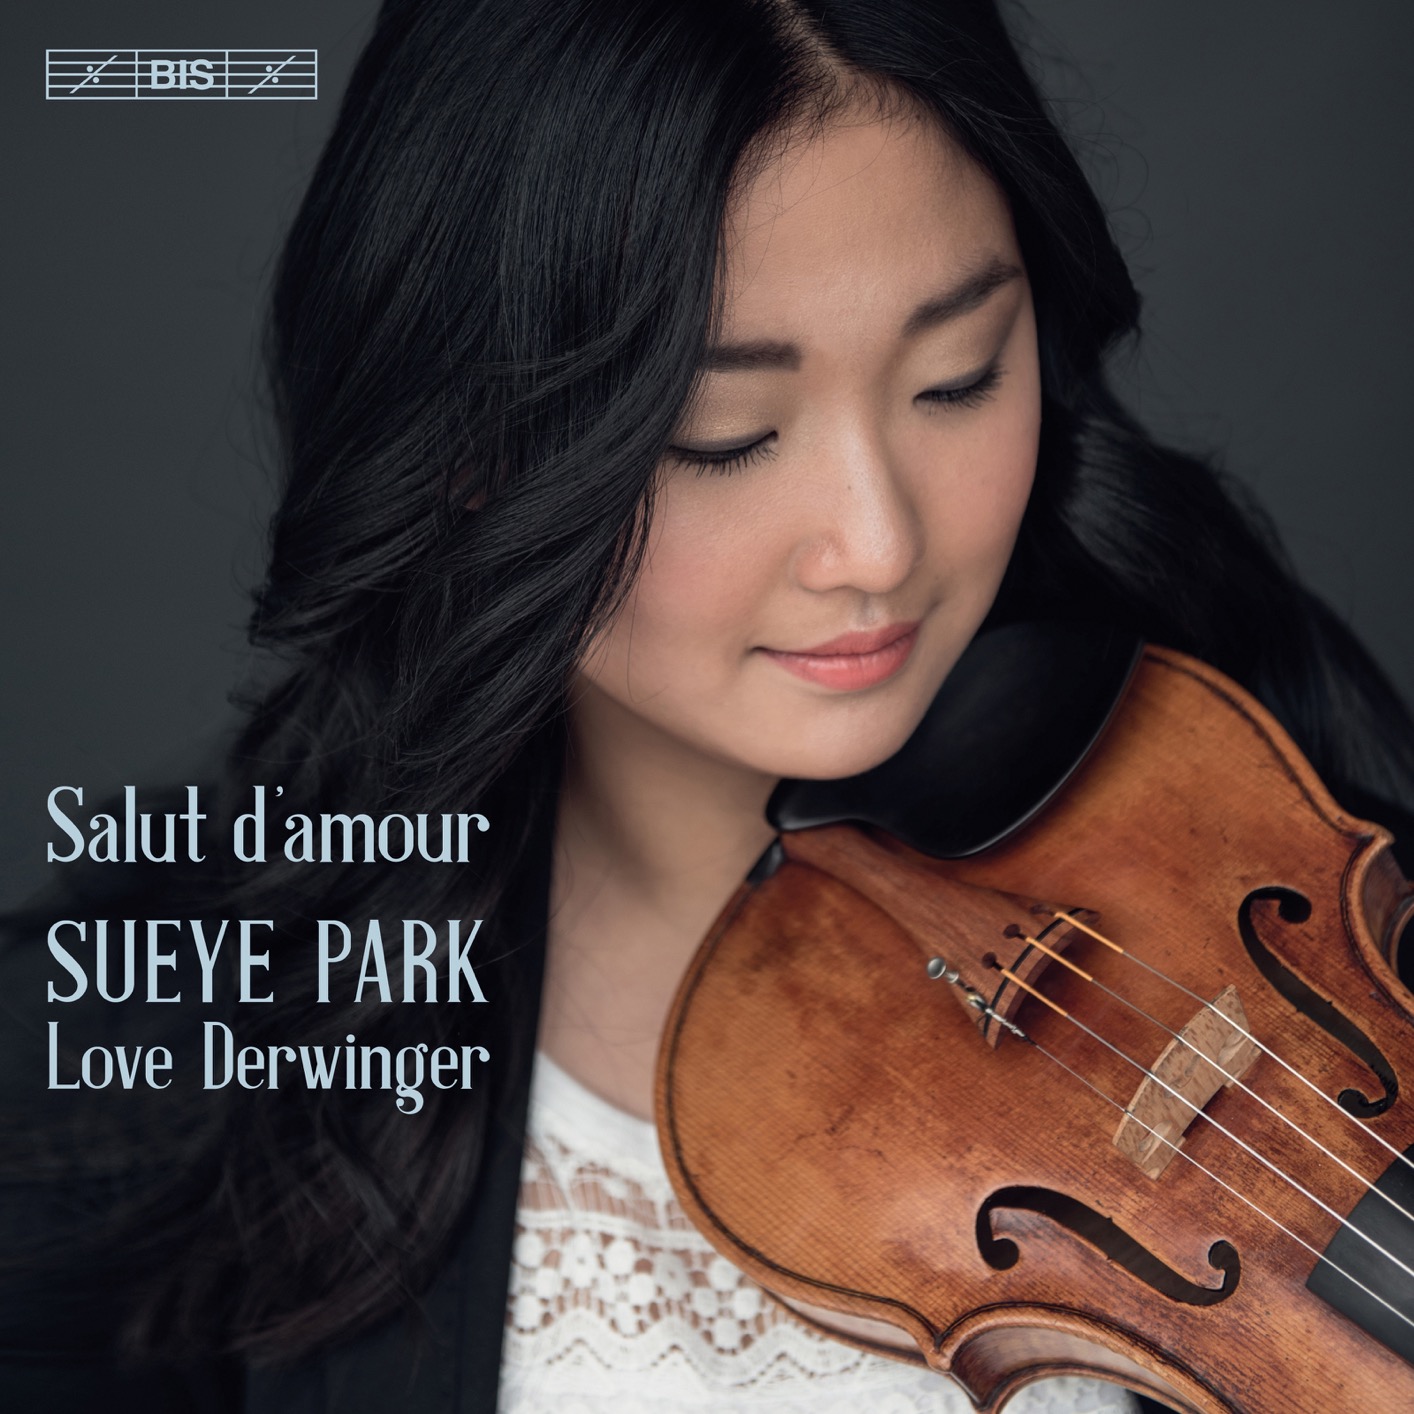 Sueye Park & Love Derwinger - Salut d’amour (2019) [FLAC 24bit/96kHz]